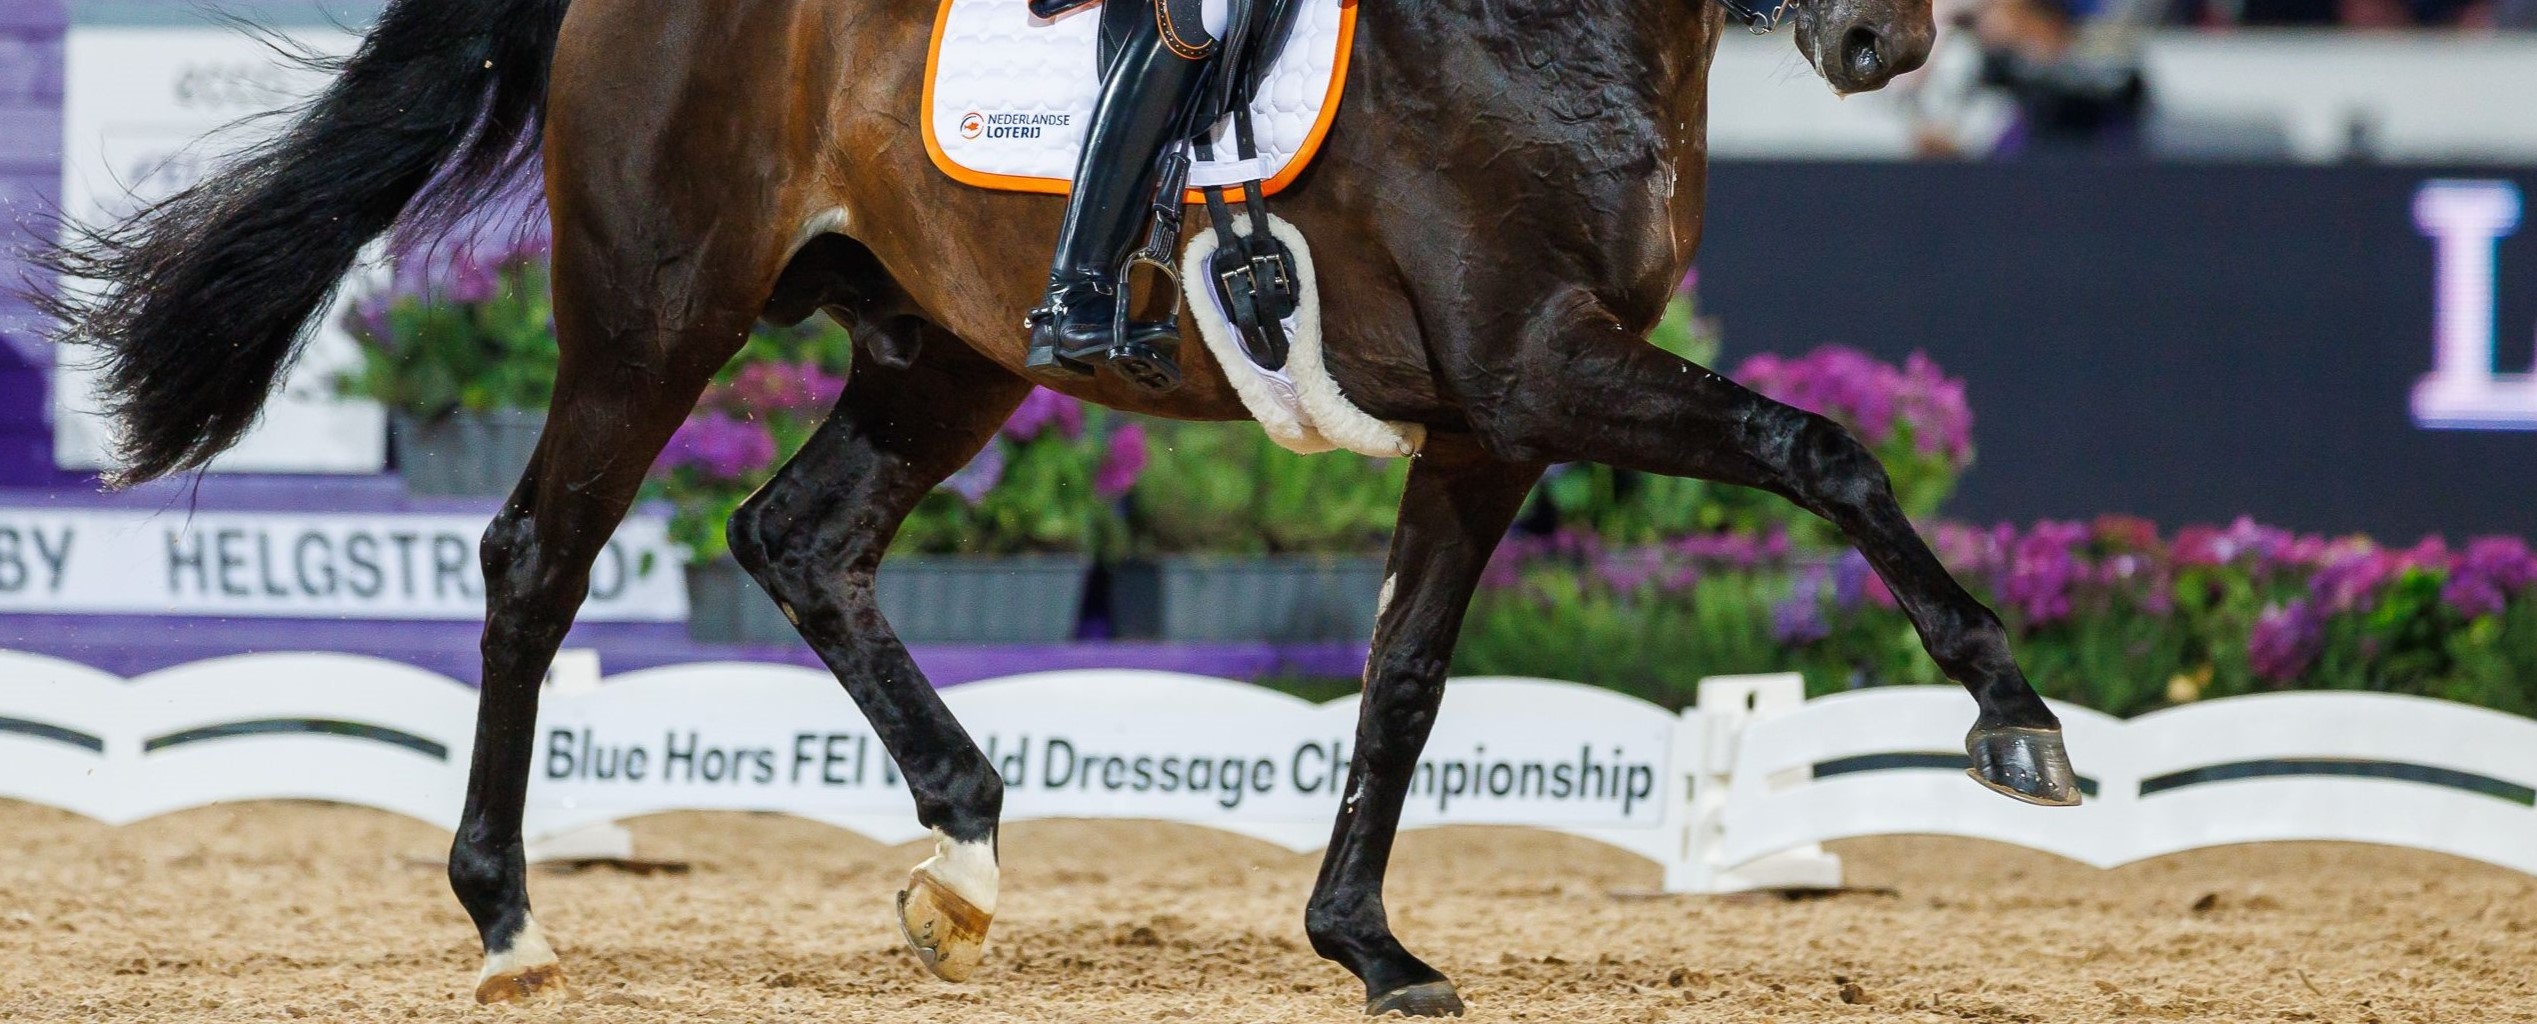 Wereldkampioenschappen jonge dressuurpaarden in de startblokken